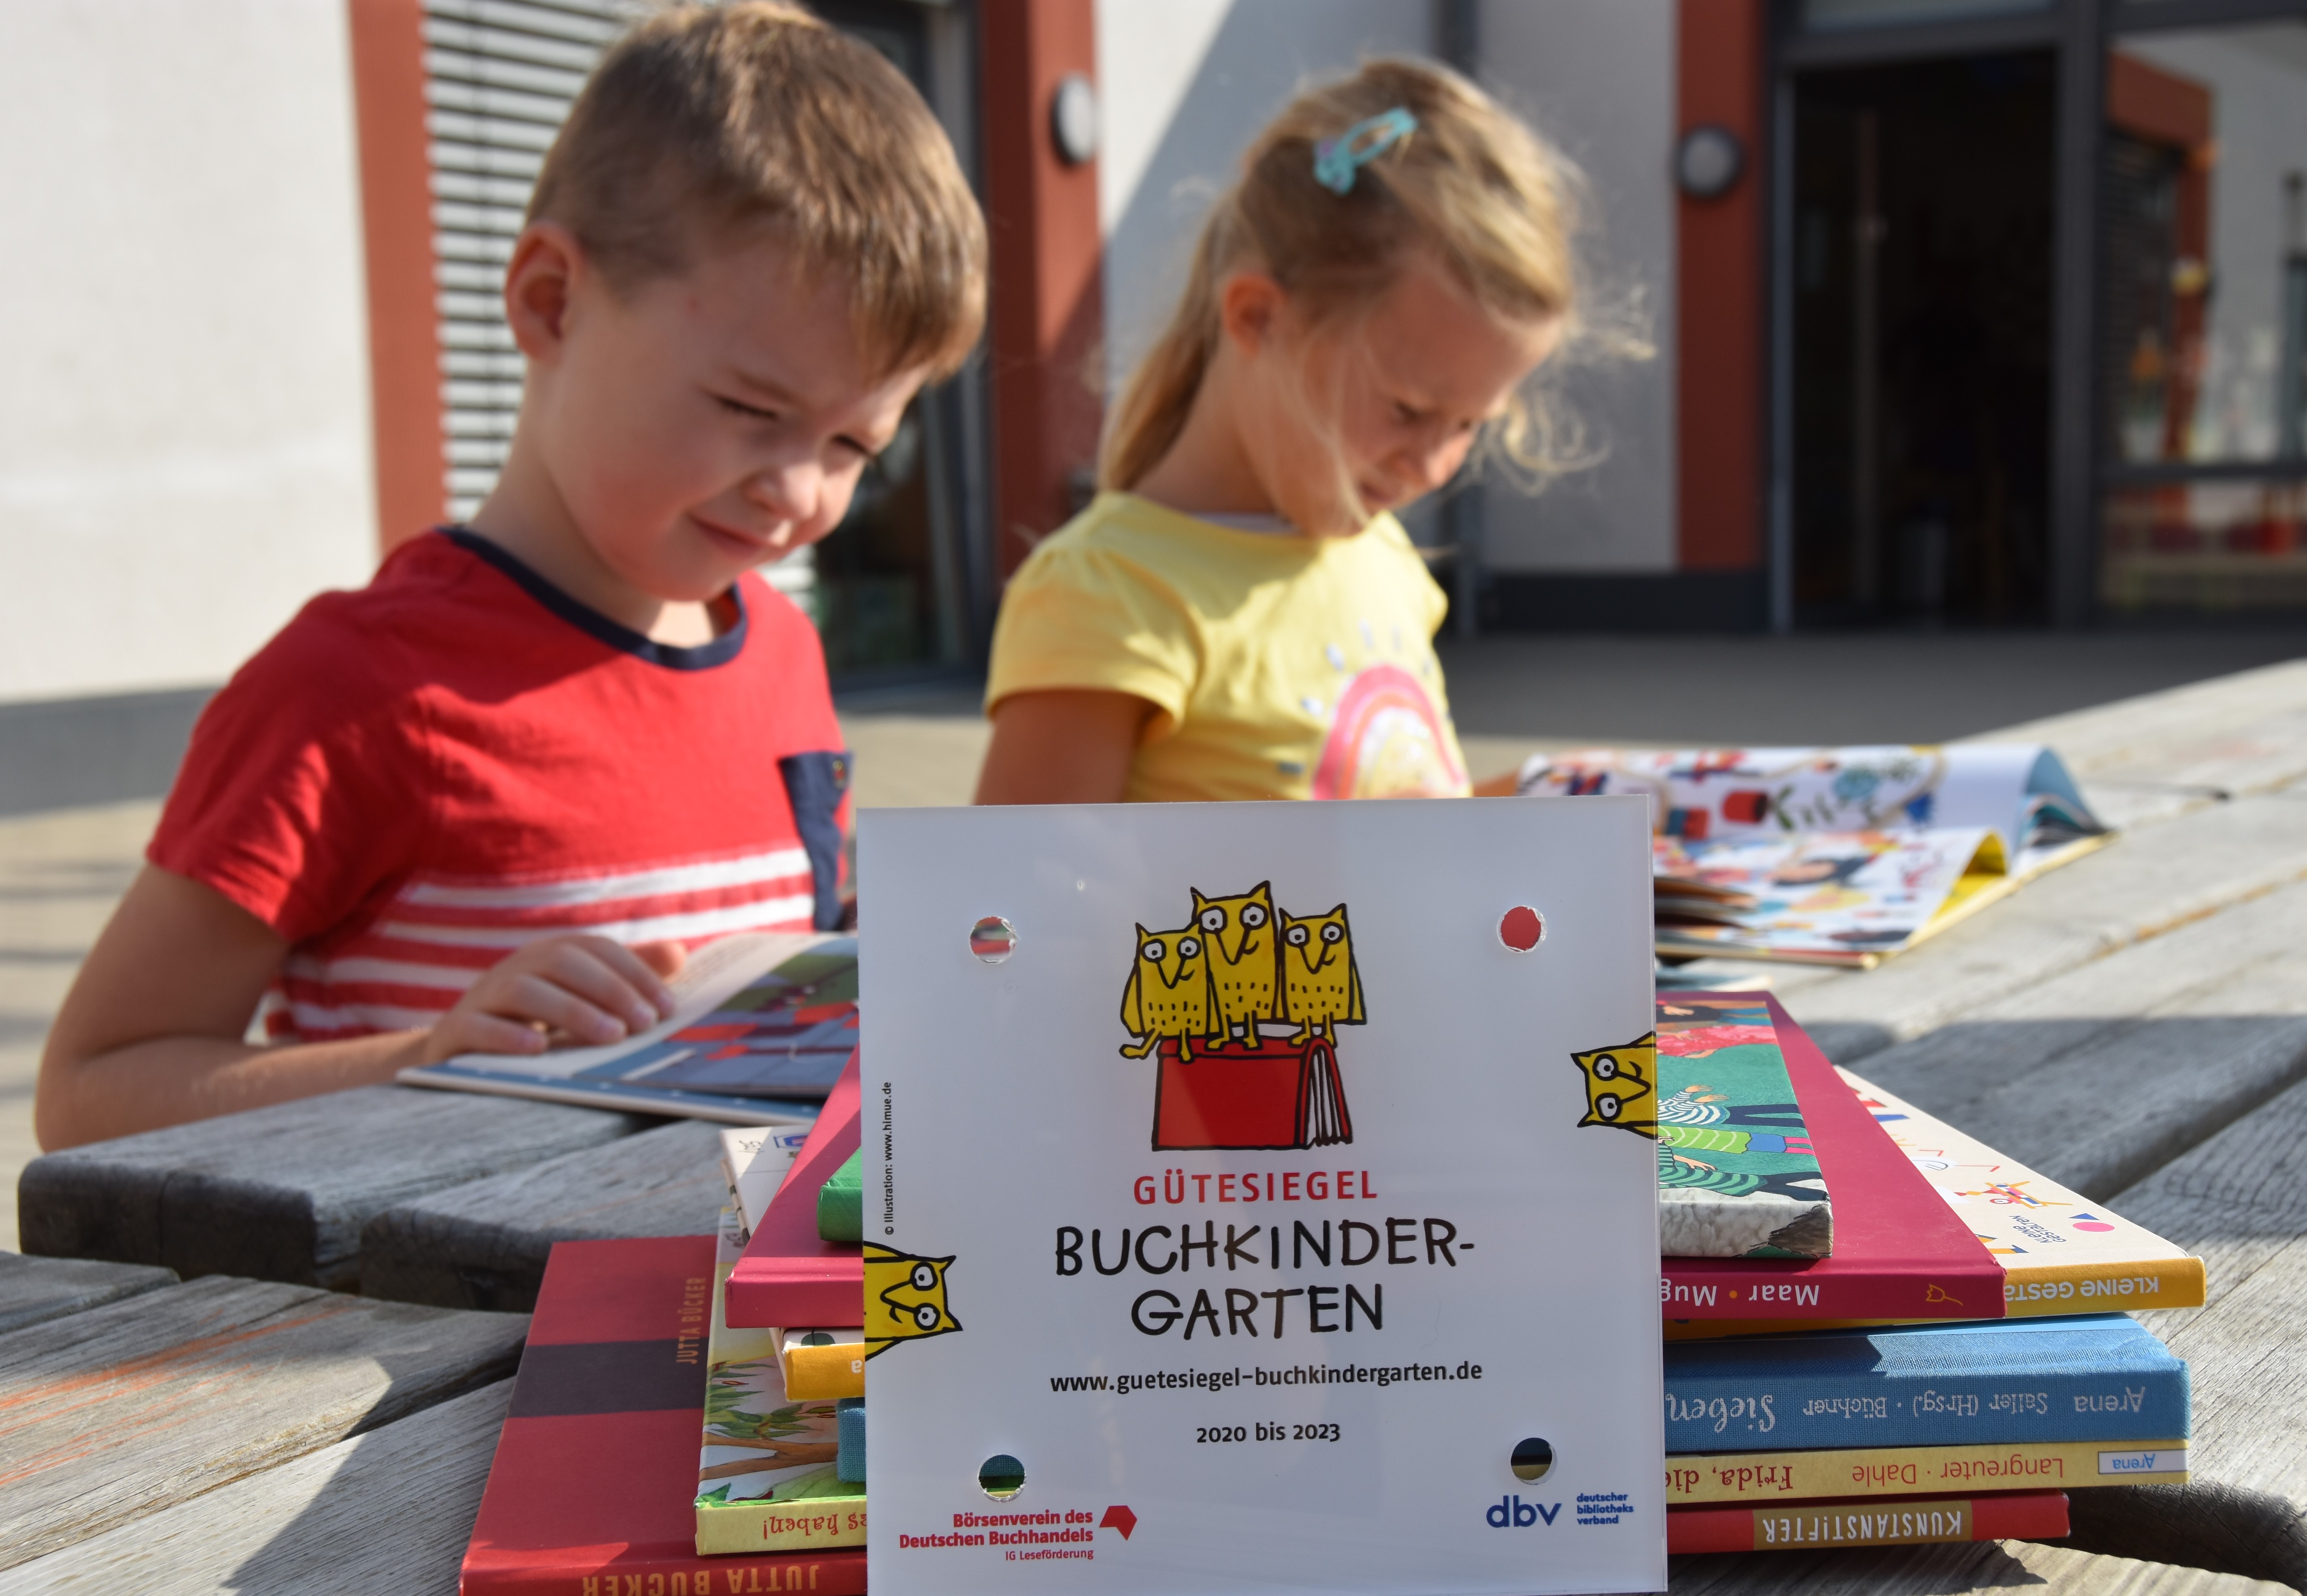 Buchkindergarten mit Gütesiegel in Leipzig